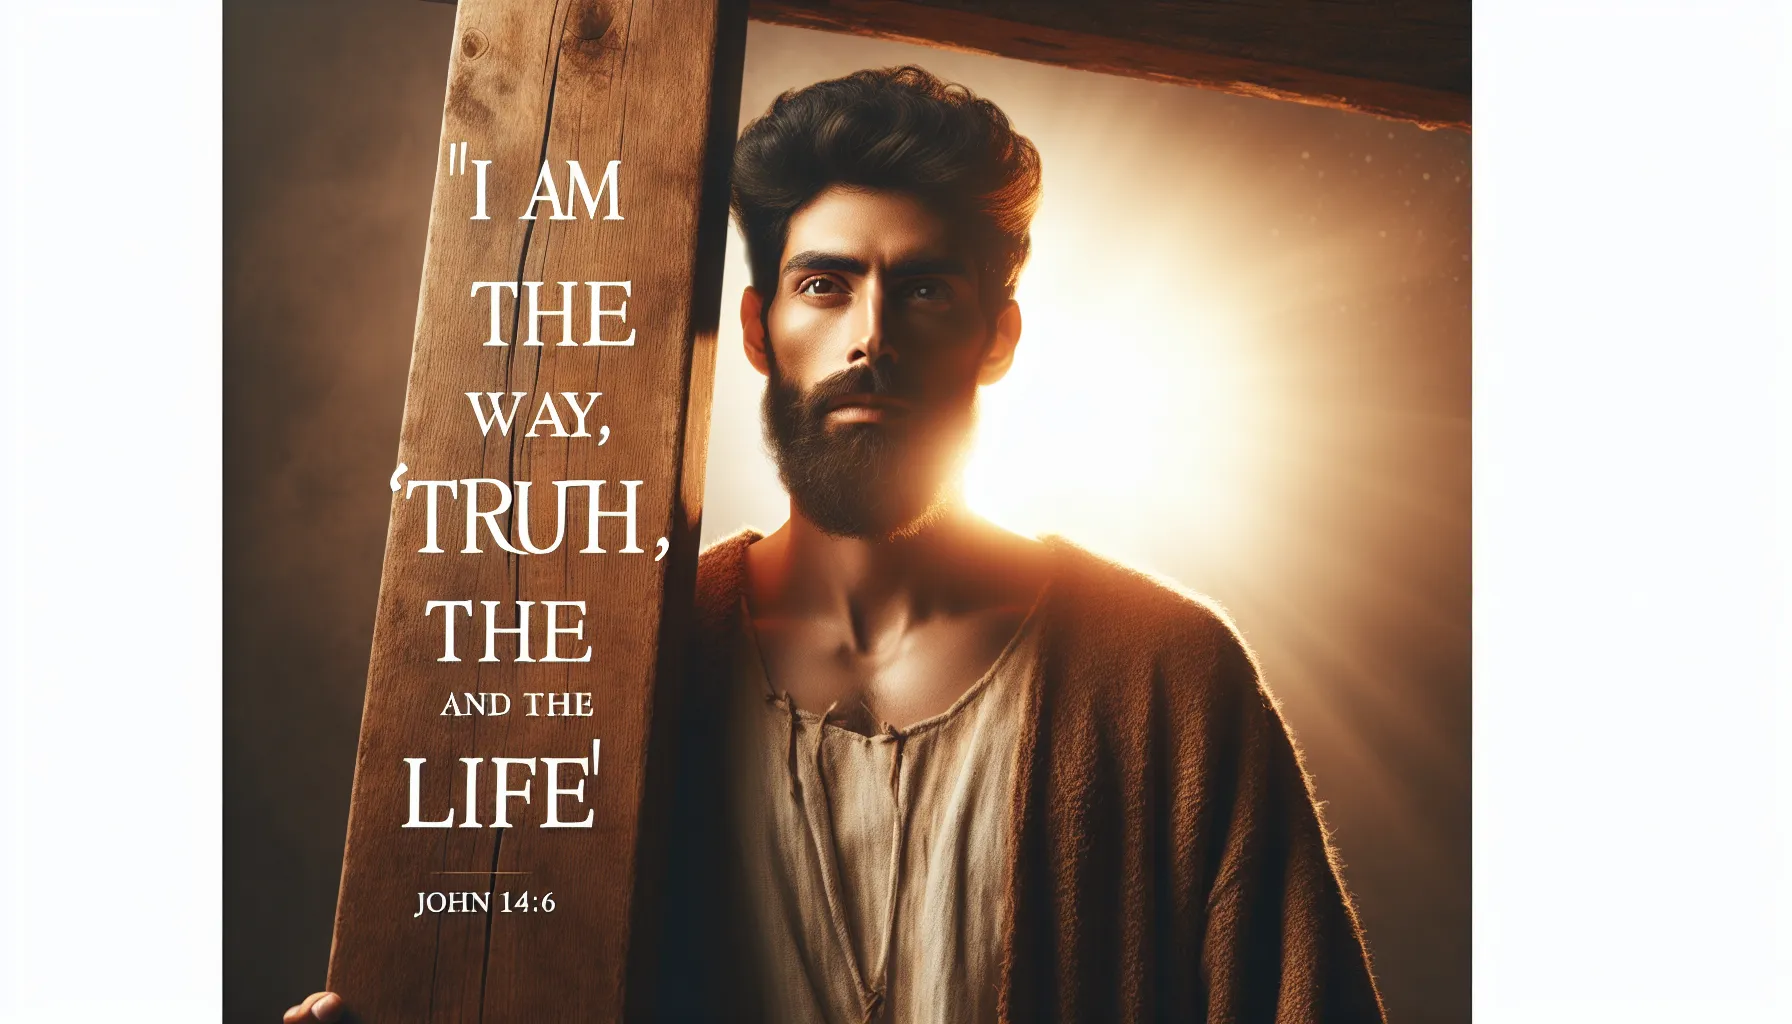 Imagen de Jesucristo con una cruz al fondo y una luz divina iluminando su rostro